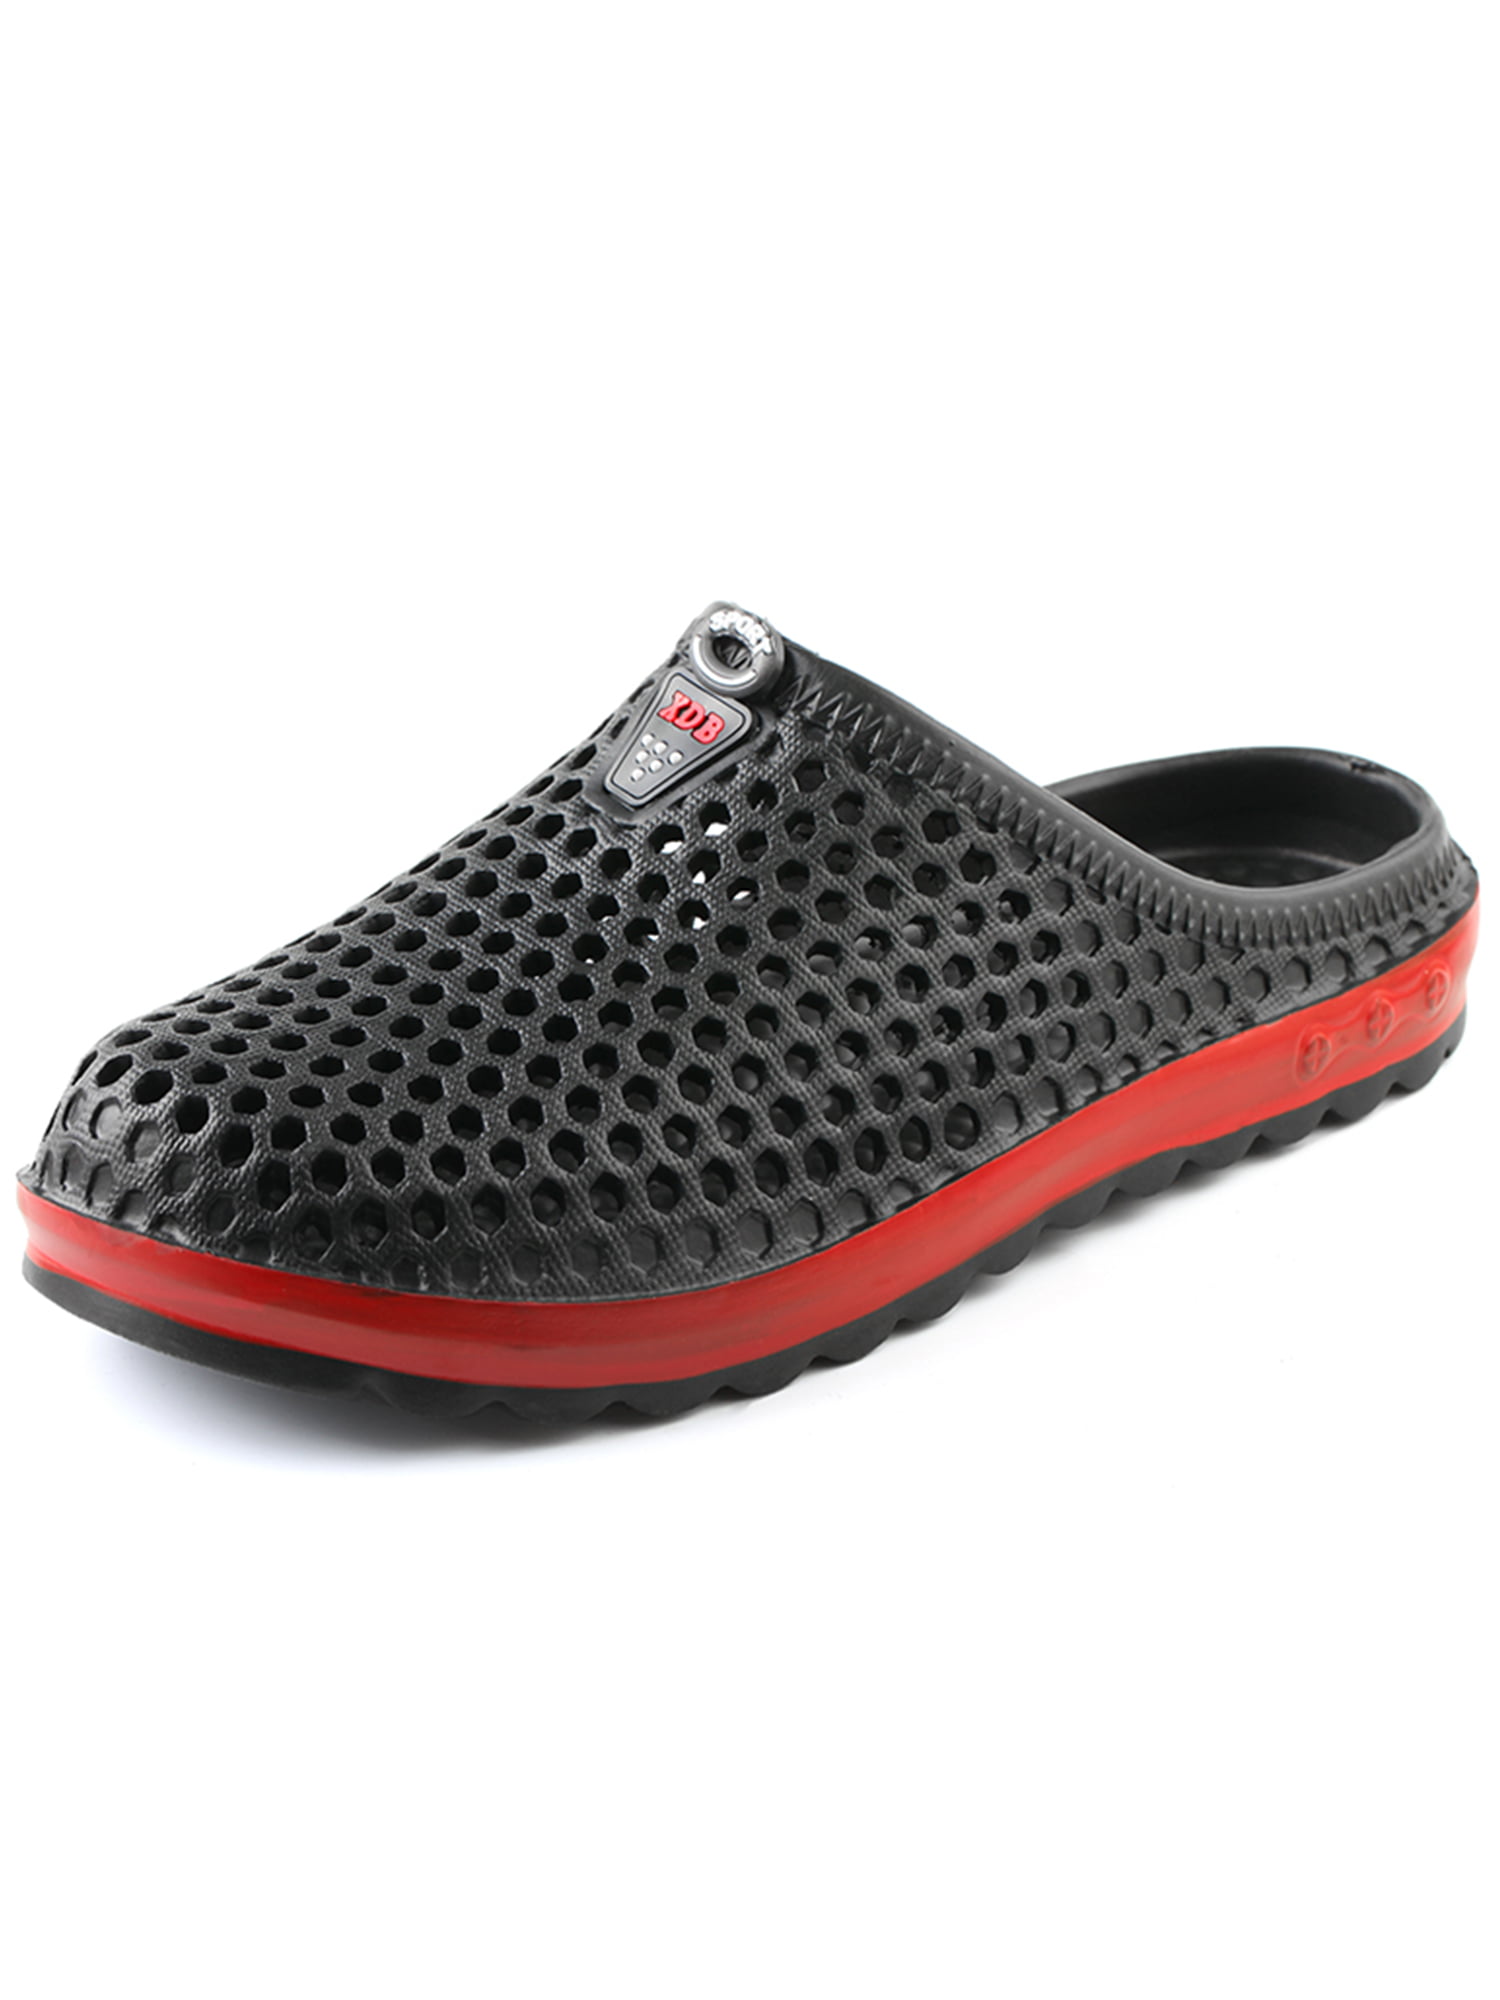 Unisex Outdoor Sport Water Shoes Comfort Walking Slippers Quick Drying Garden Clogs Sintiz Beach Sandals